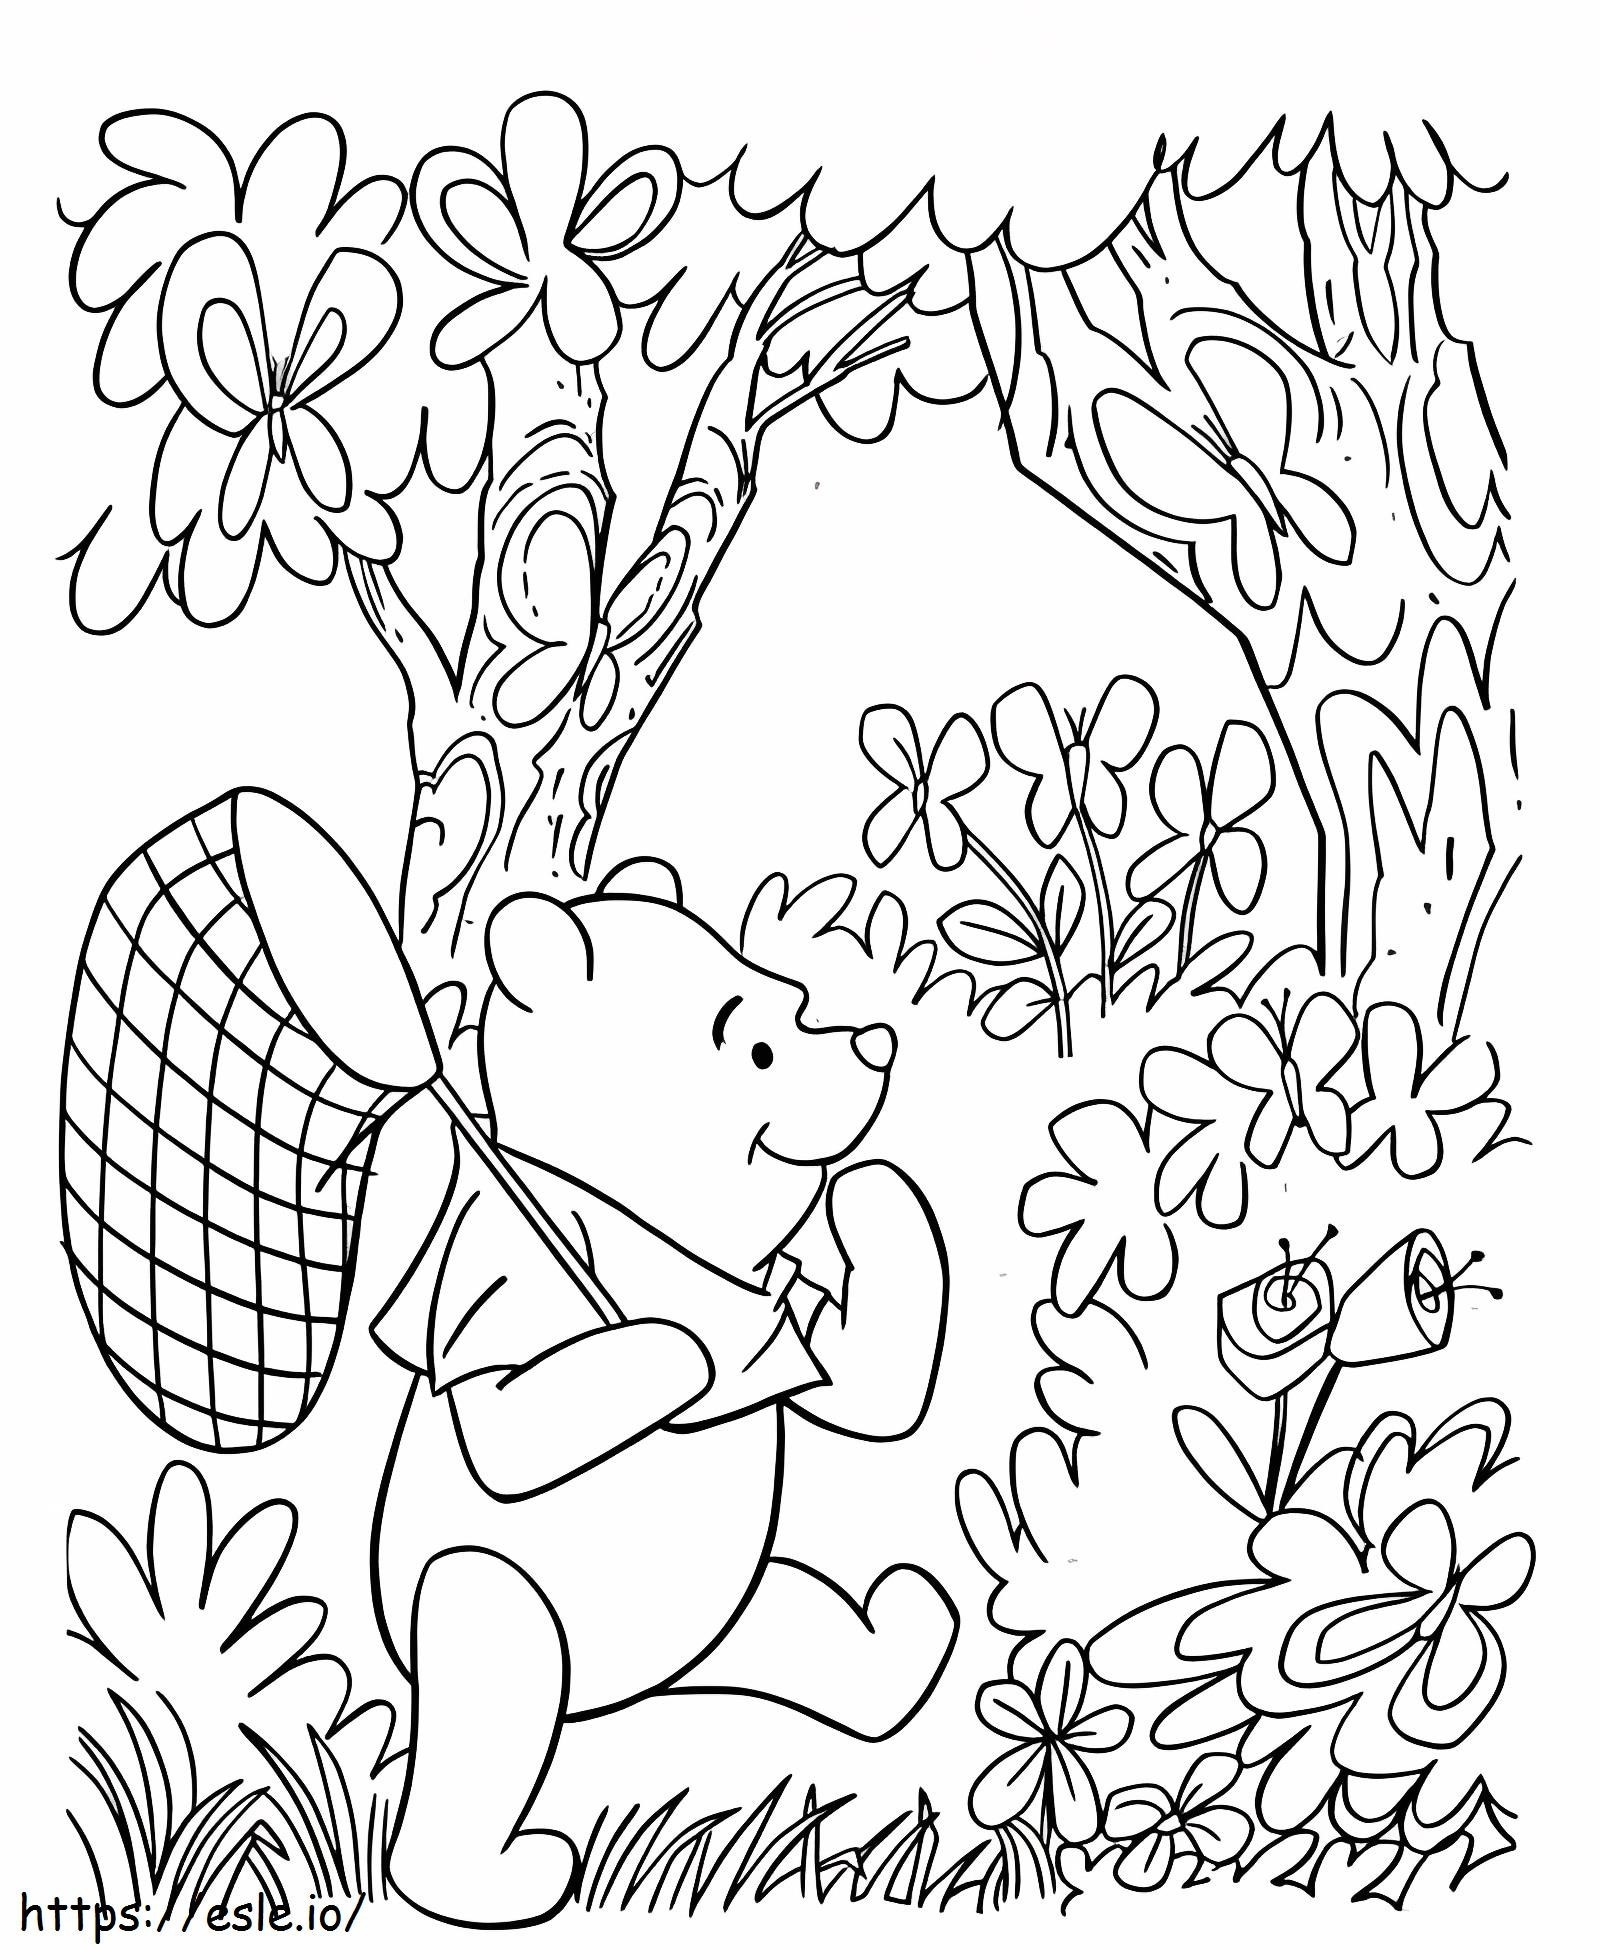 O Ursinho Pooh vai pegar insetos para colorir